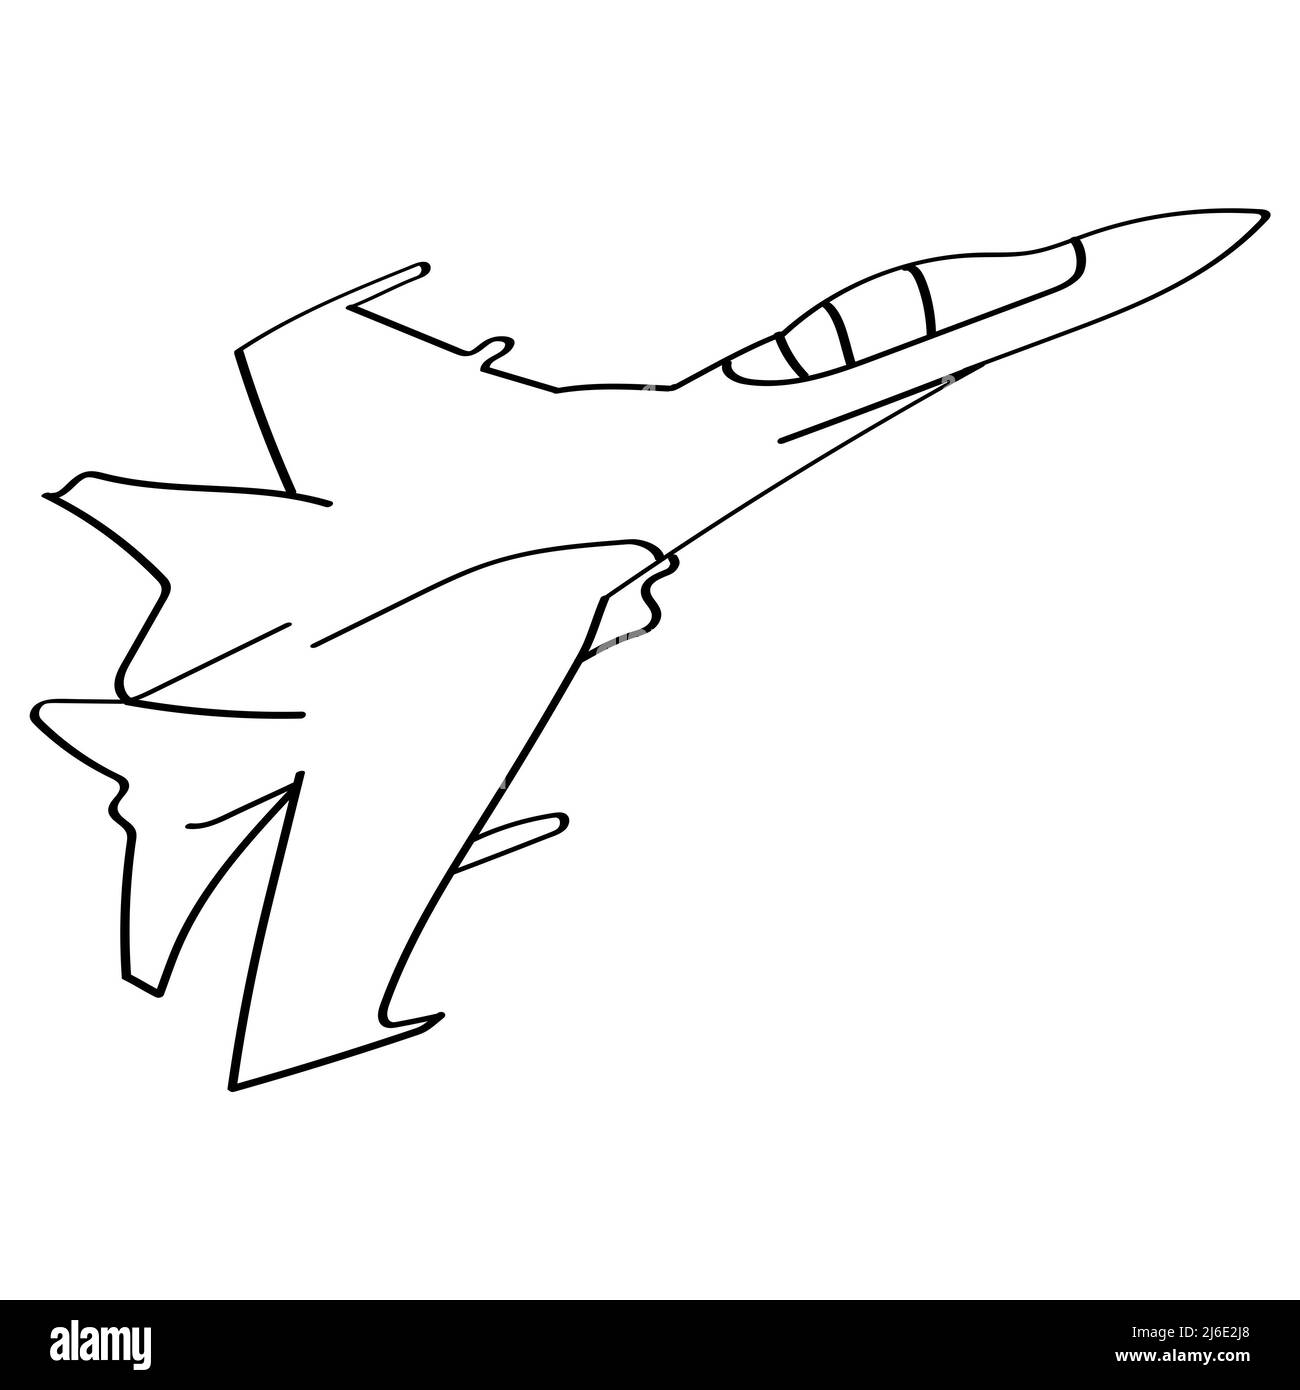 Avion militaire de dessin animé isolé sur fond blanc pour le design artistique Banque D'Images